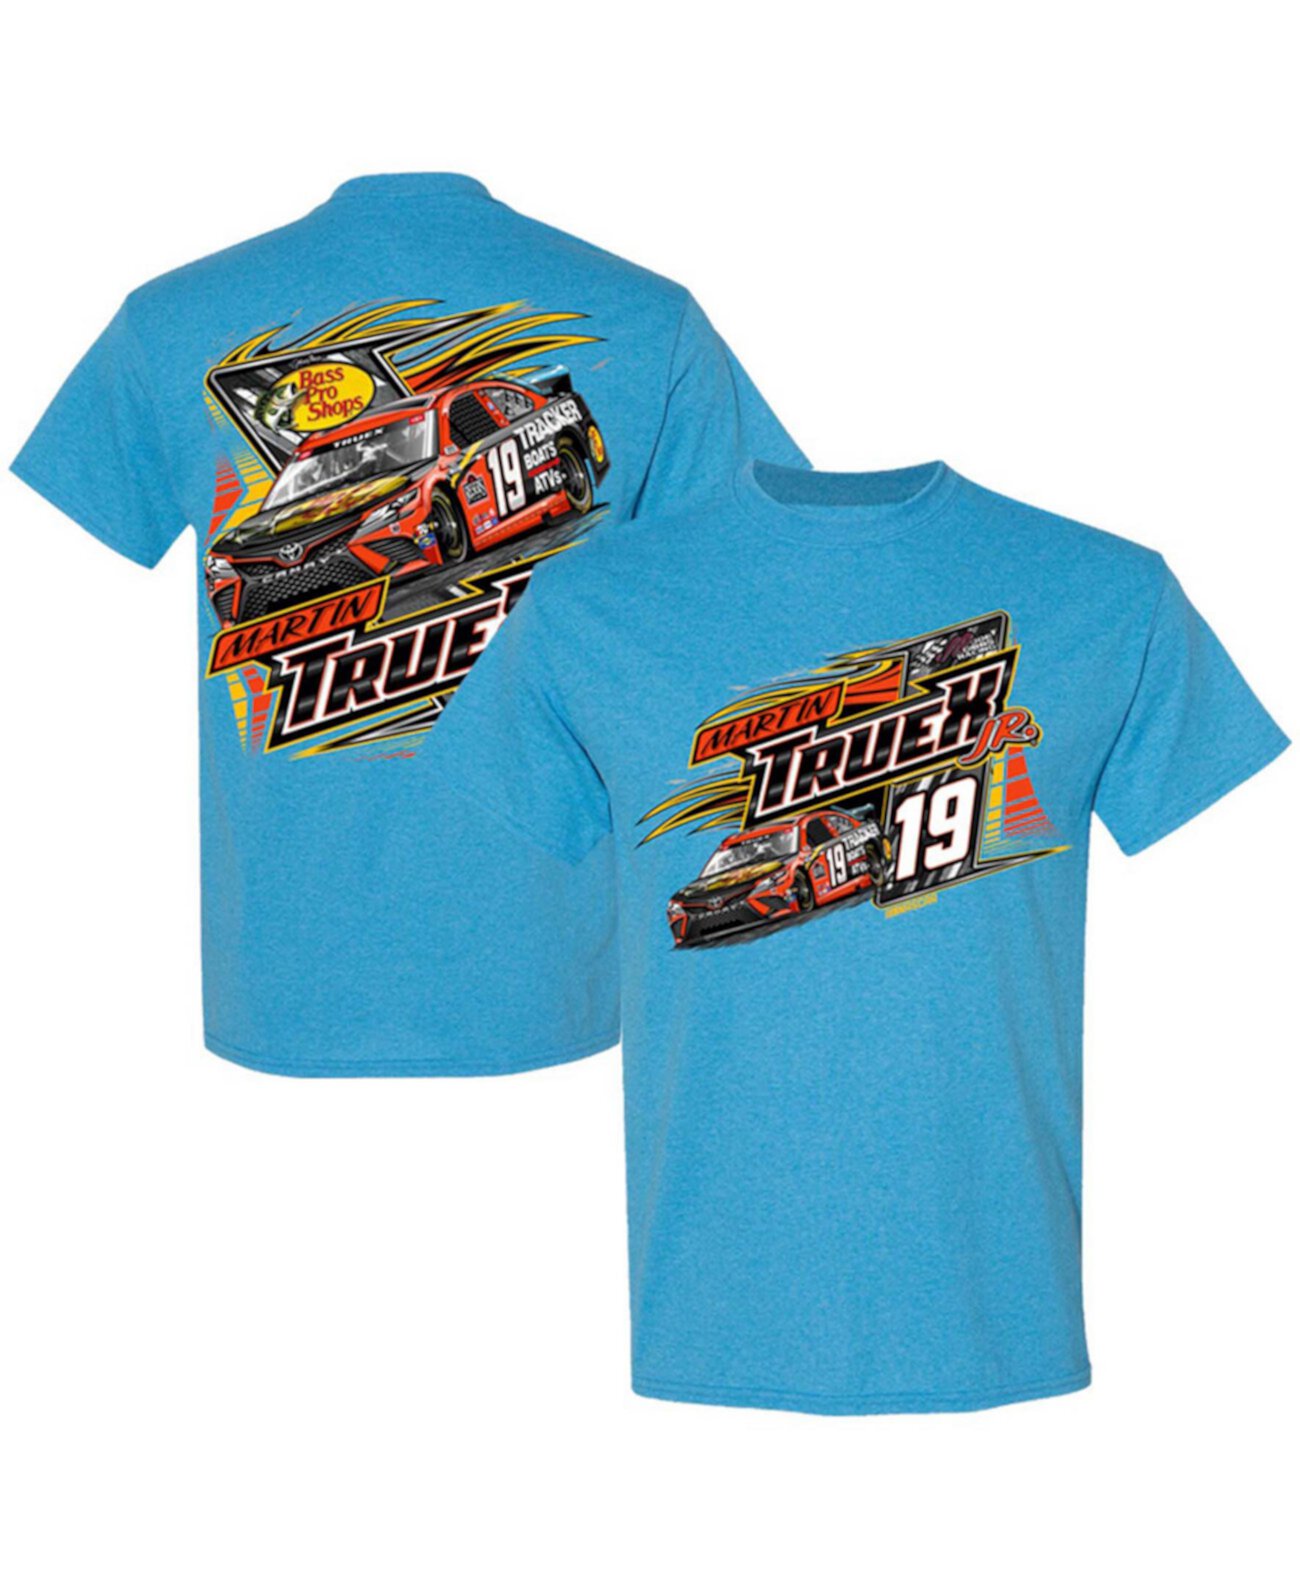 Голубая мужская футболка Martin Truex Jr Bass Pro Shops Car 2-Spot Joe Gibbs Racing Team Collection